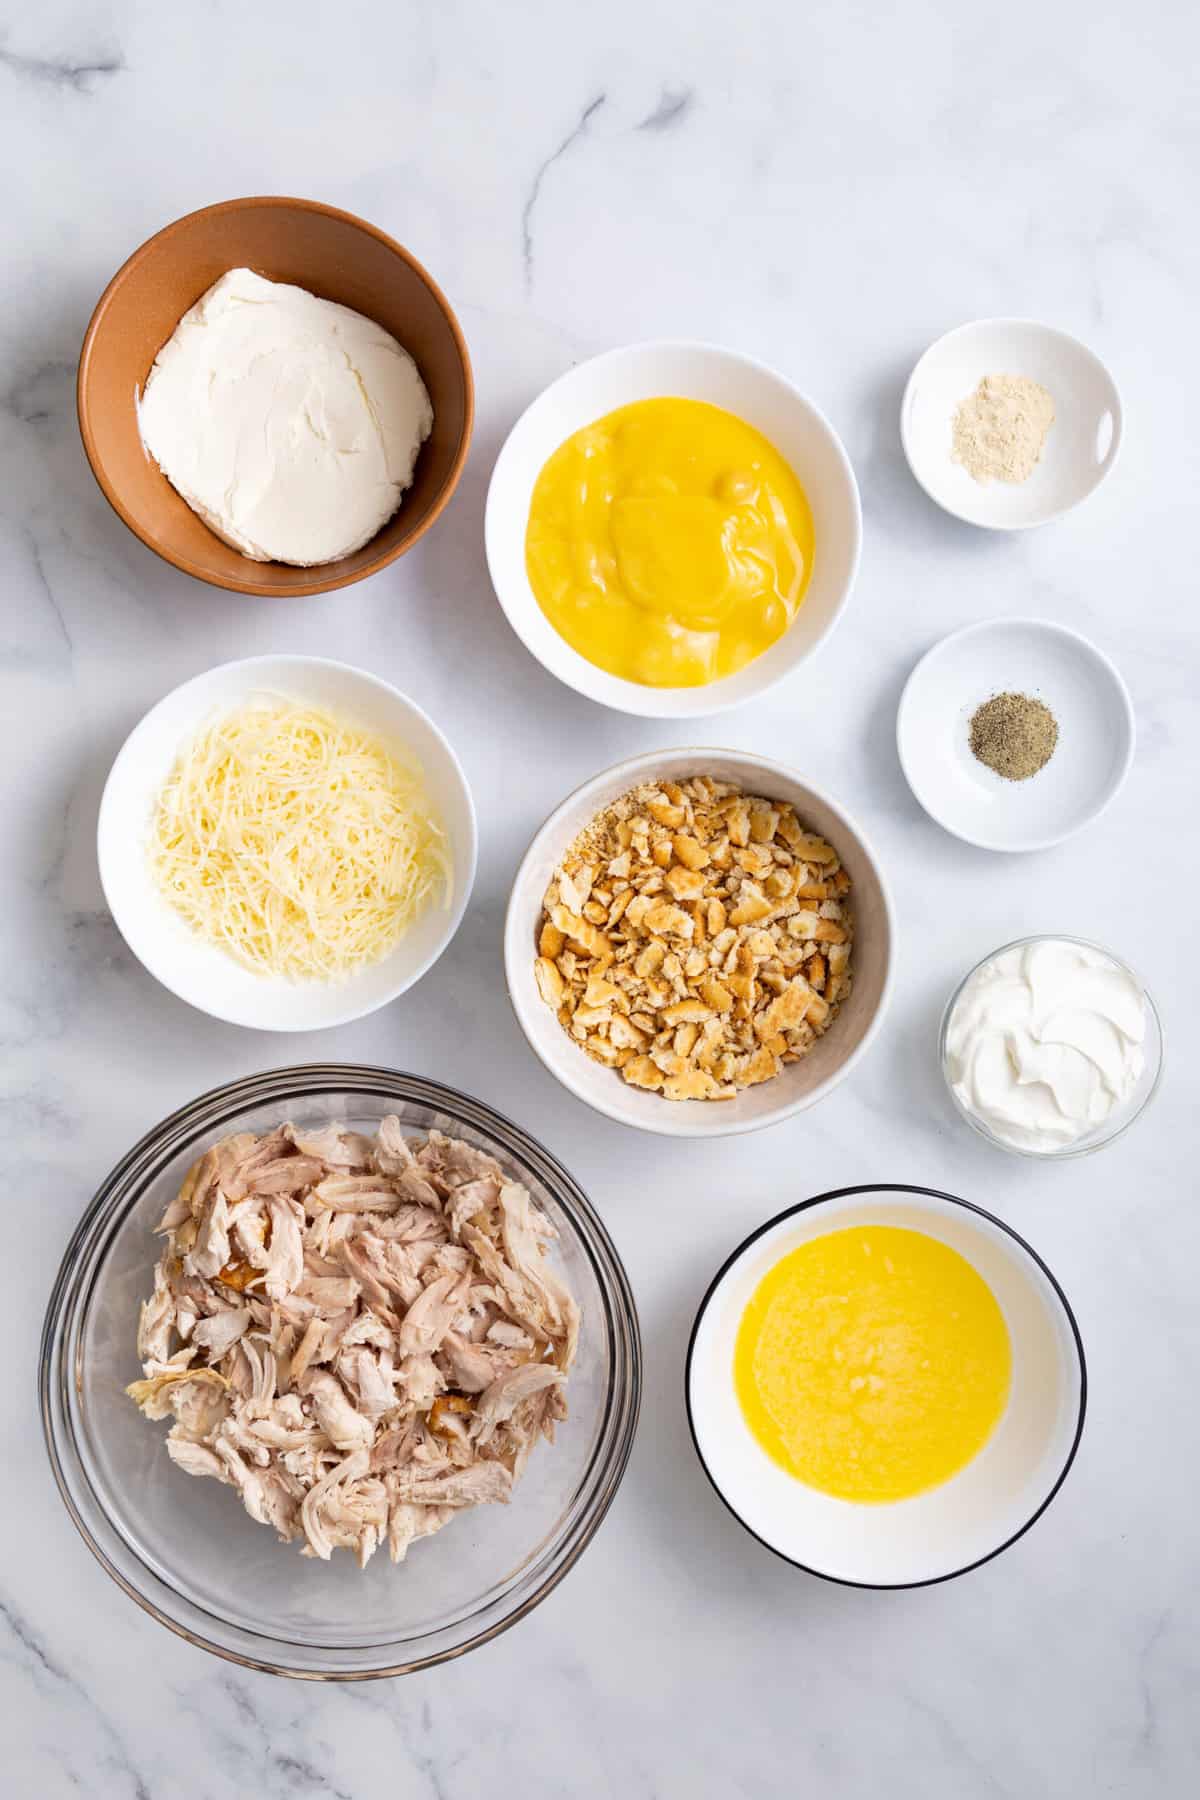 ingredients to make million dollar chicken casserole.